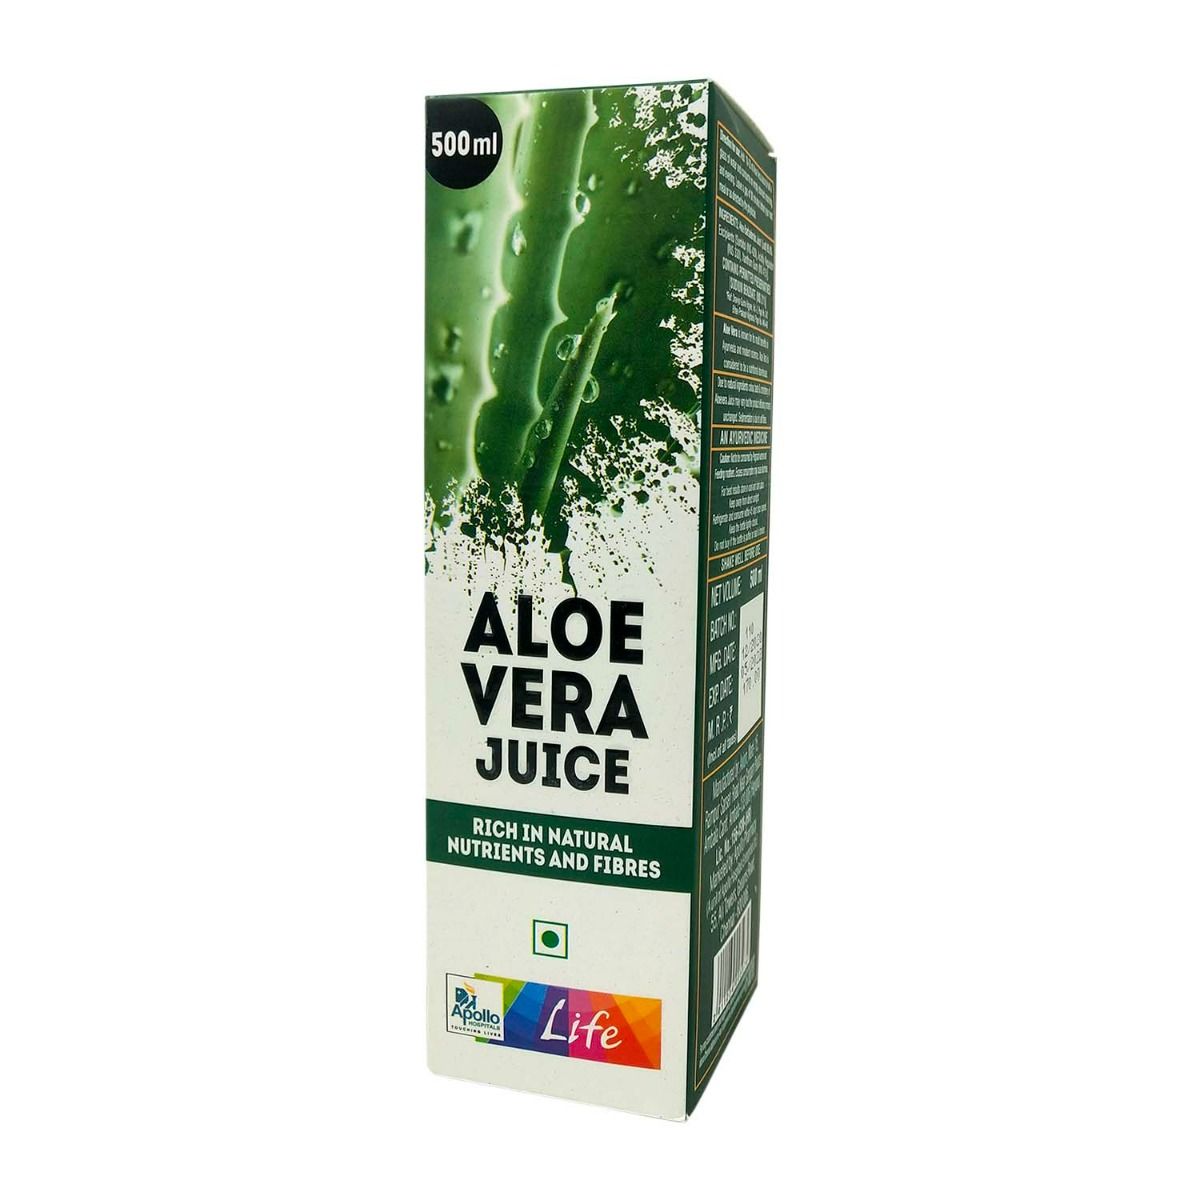 Buy Apollo Life Aloe Vera Juice, 500 ml Online